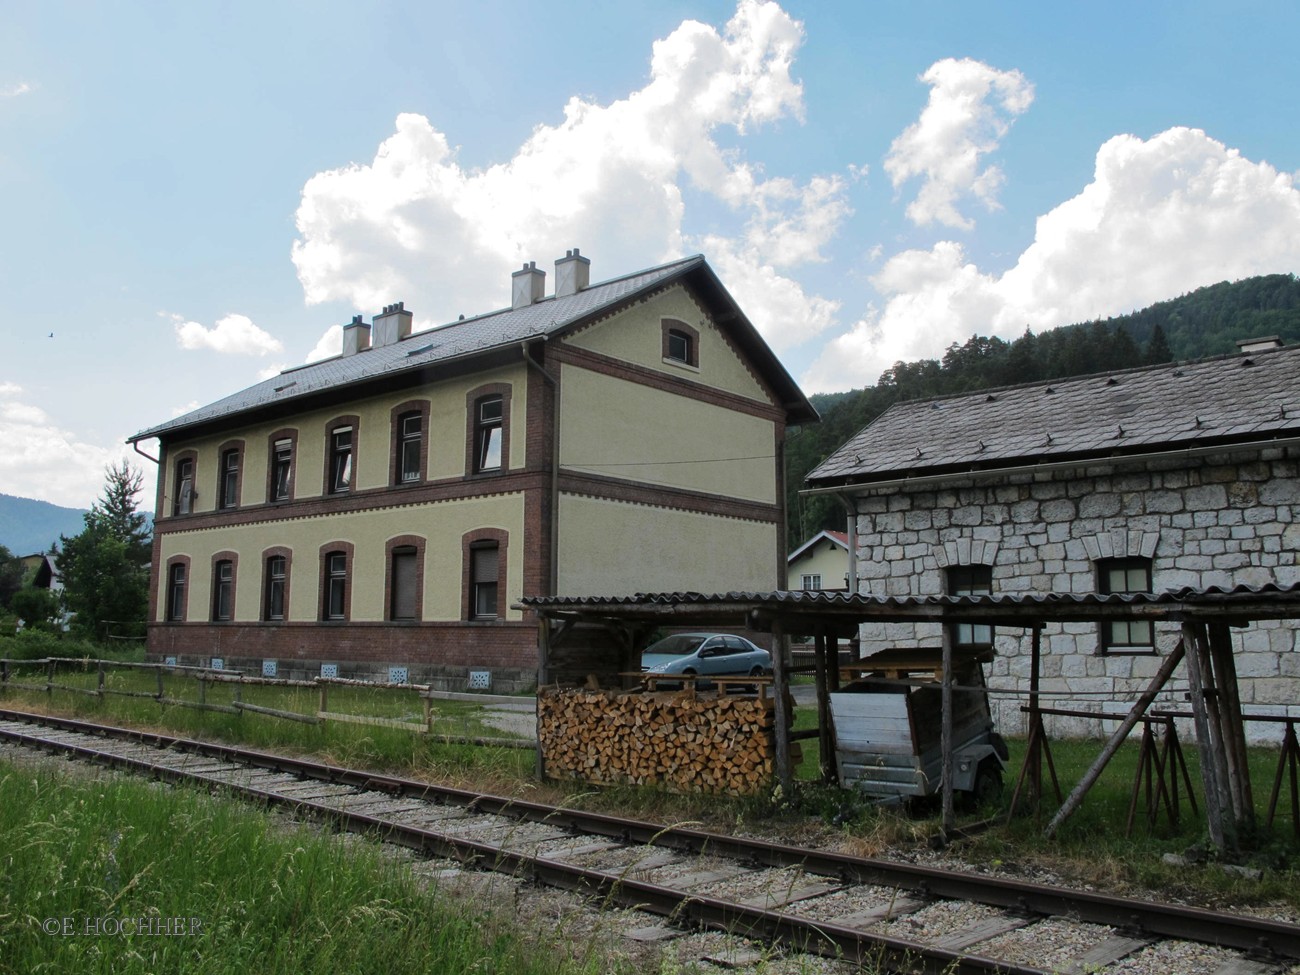 Eisenbahnerwohnhaus